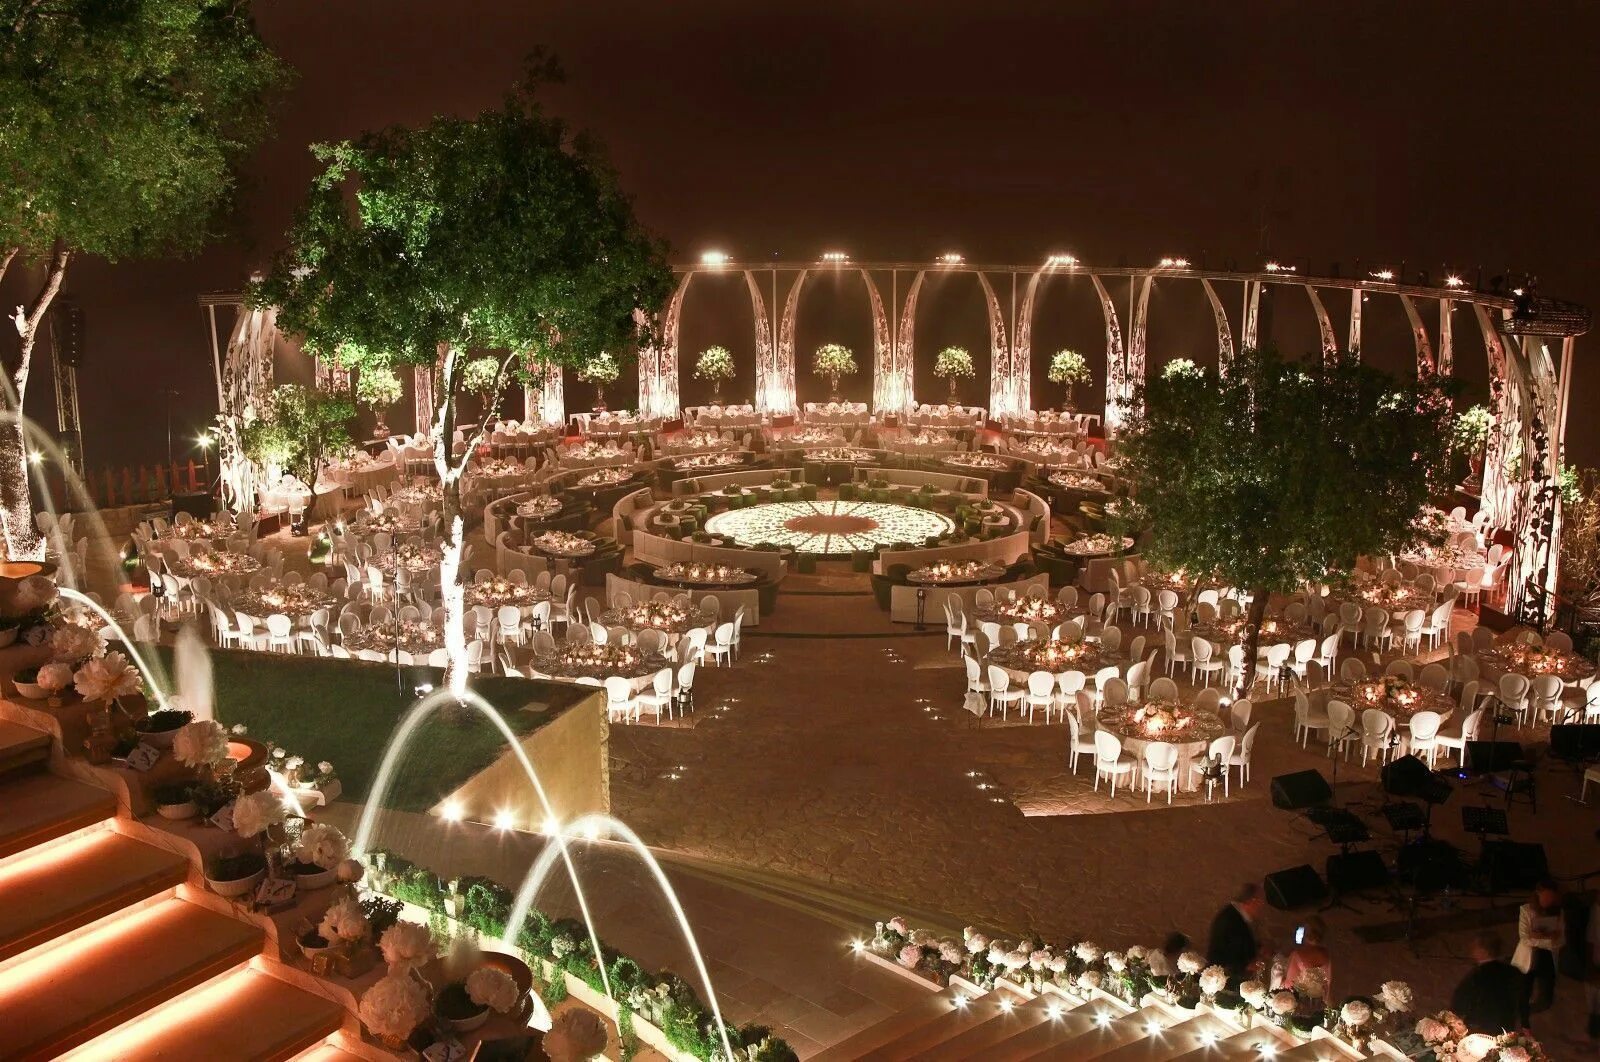 Amazing event. Свадьба в стиле Дубаи. Illumination Garden. Wedding Garden Dubai. Королевская свадьба в ОАЭ проволочная инсталляция.